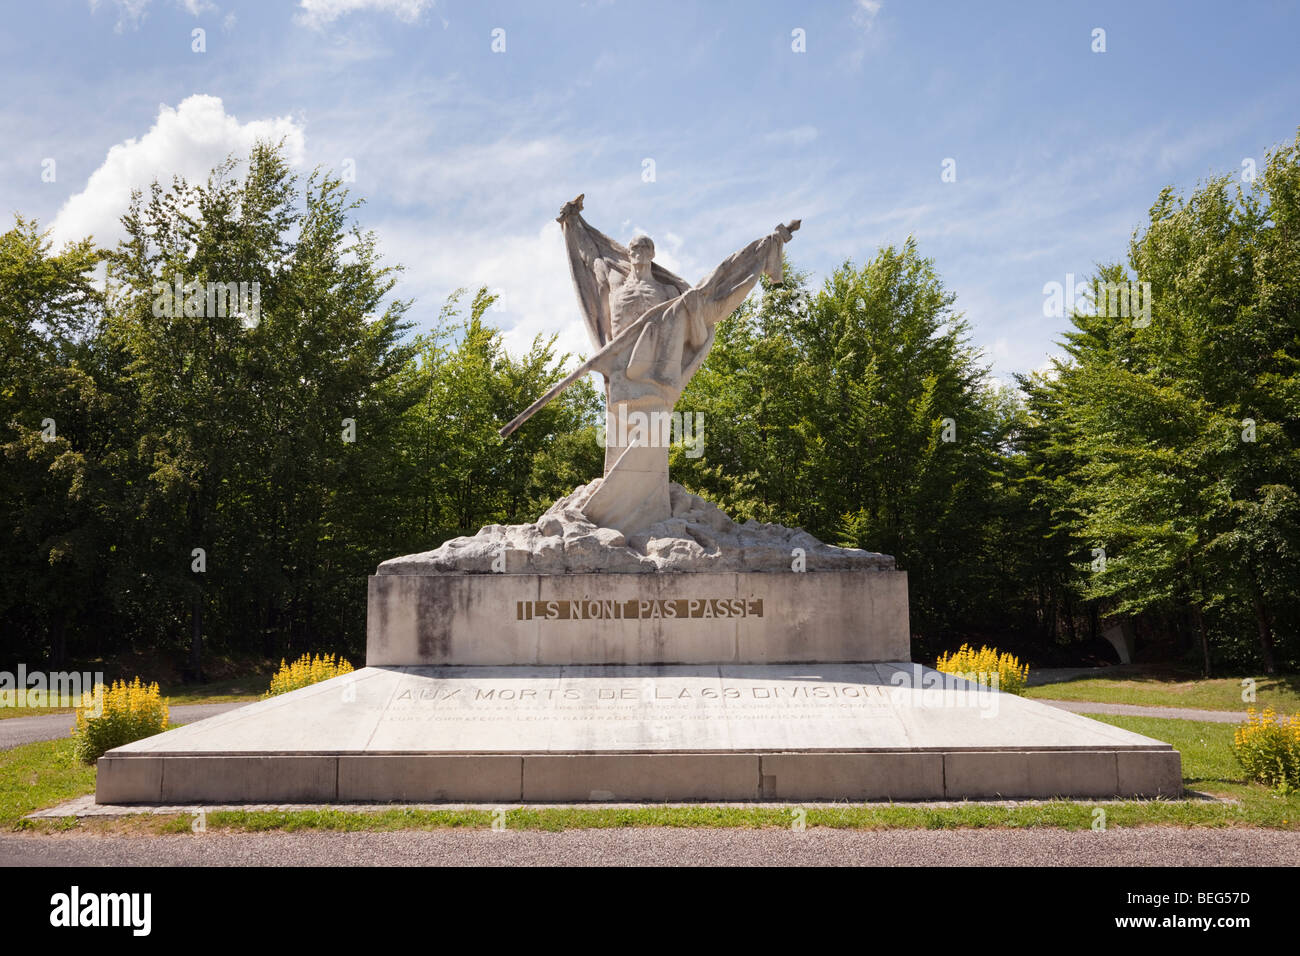 Chattancourt Verdun Francia Europa. Escultura Conmemorativa de la Primera Guerra Mundial en Le Mort Homme hill inscrito "no deberán pasar' Foto de stock